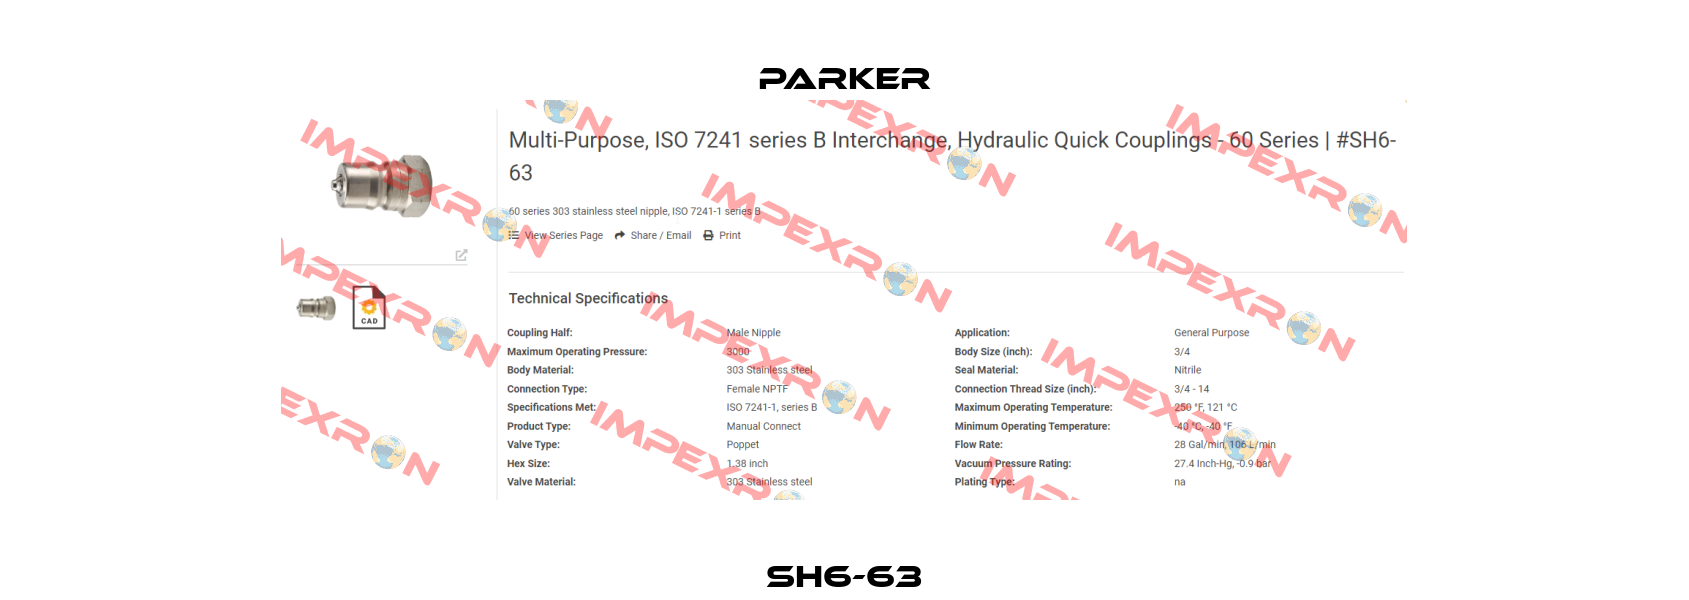 SH6-63 Parker